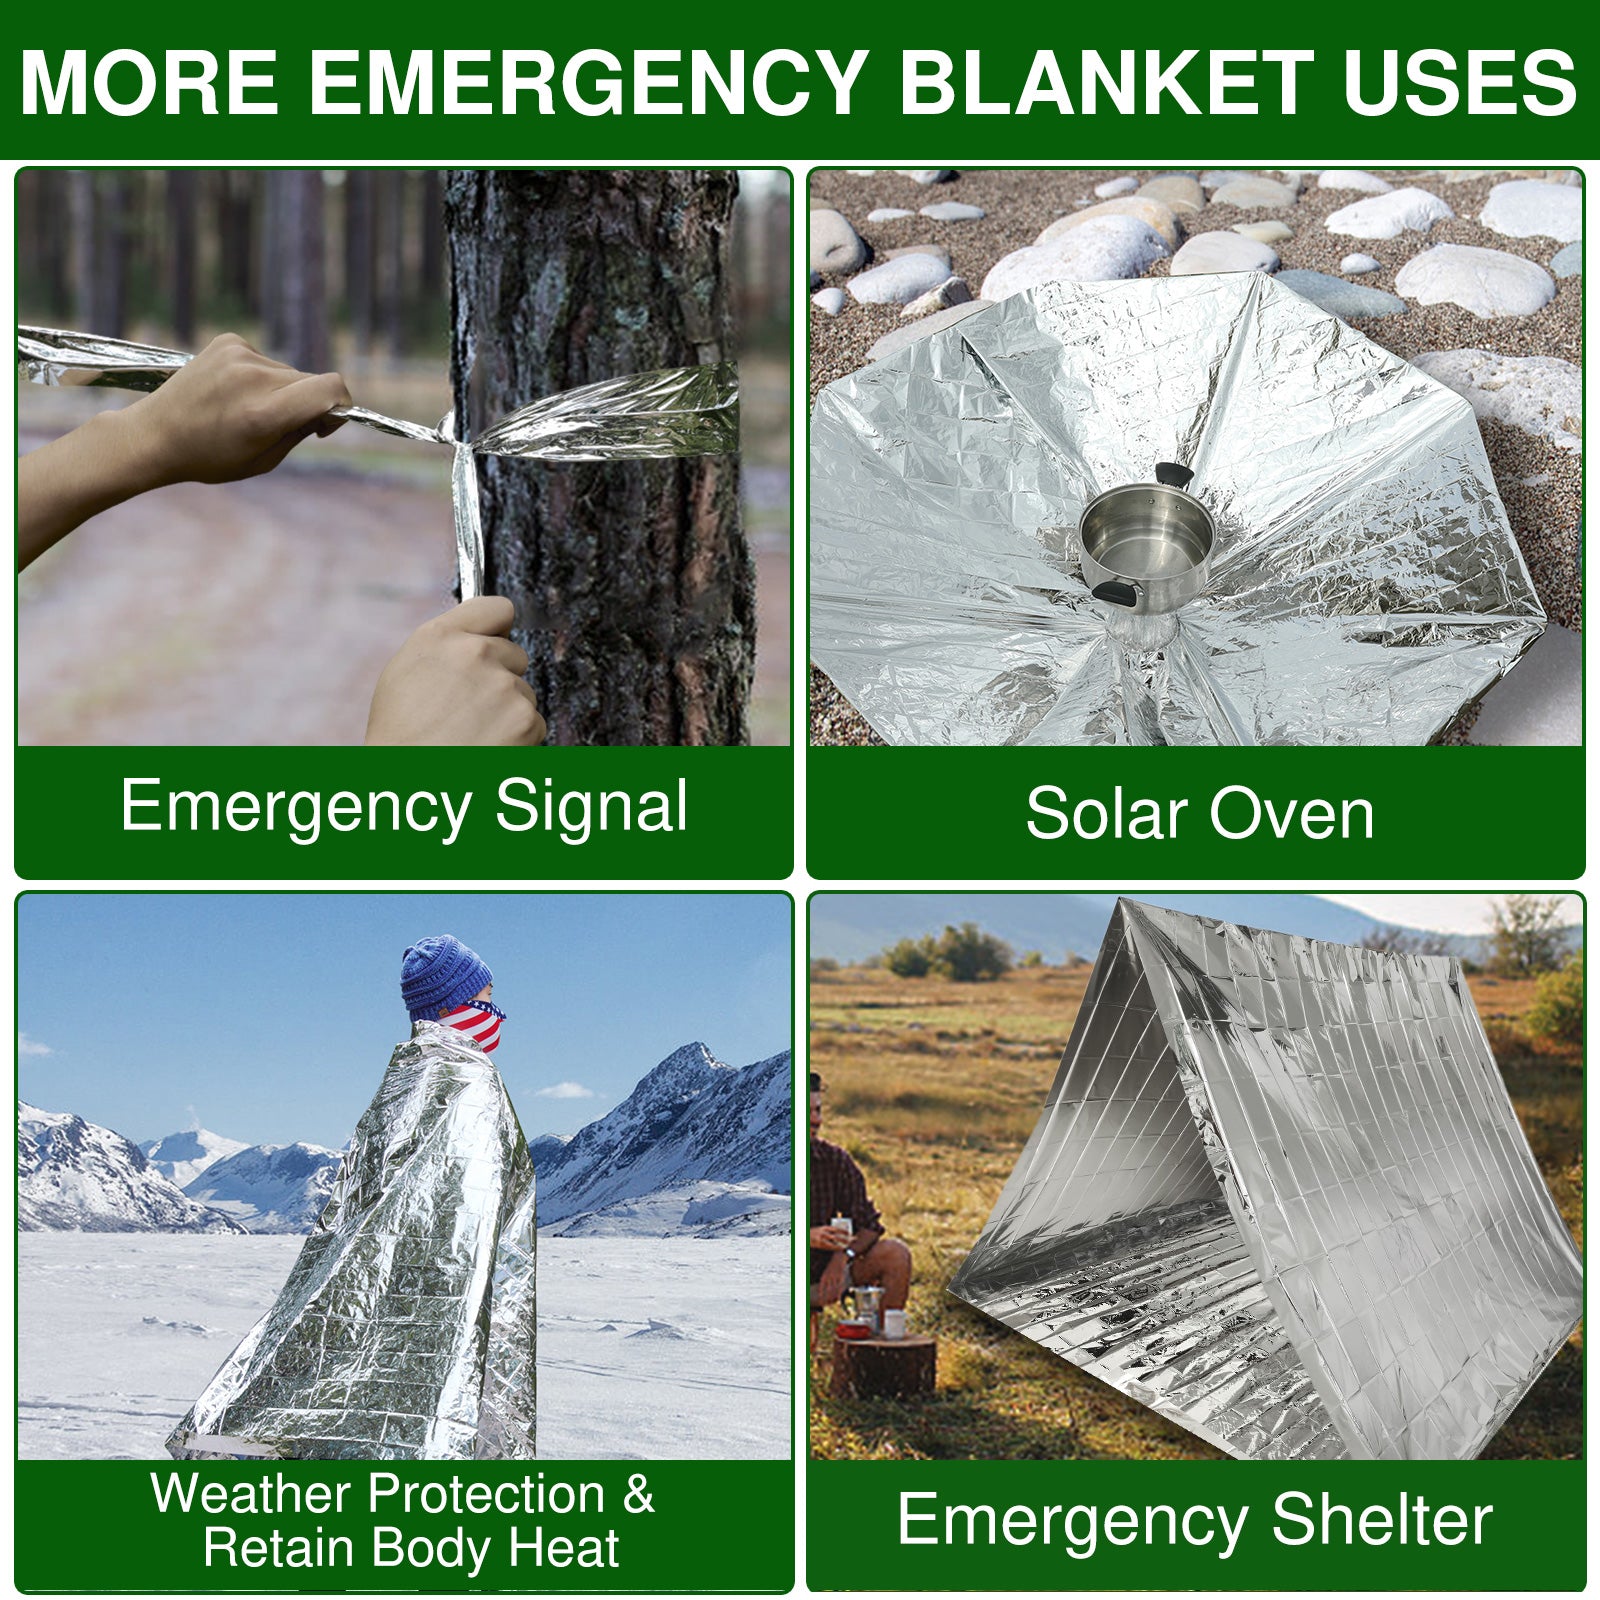 emergency blanket uses